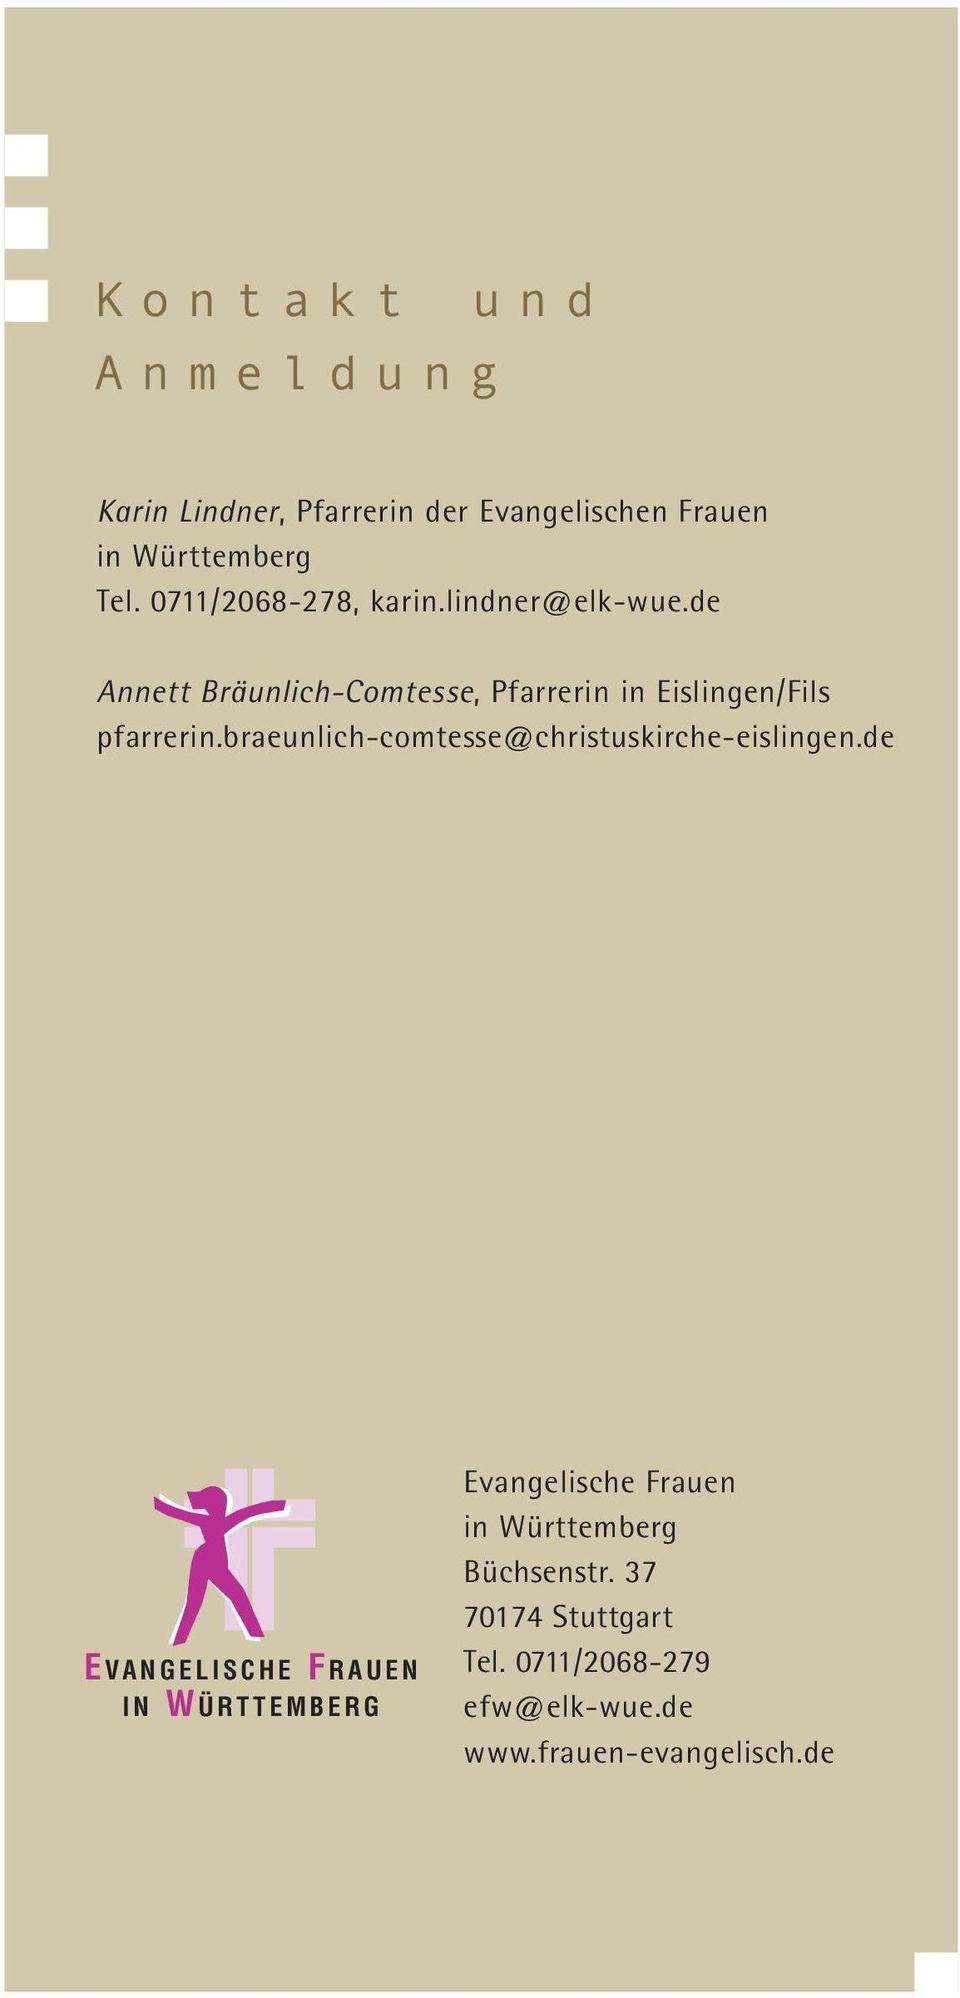 de Annett Bräunlich-Comtesse, Pfarrerin in Eislingen/Fils pfarrerin.